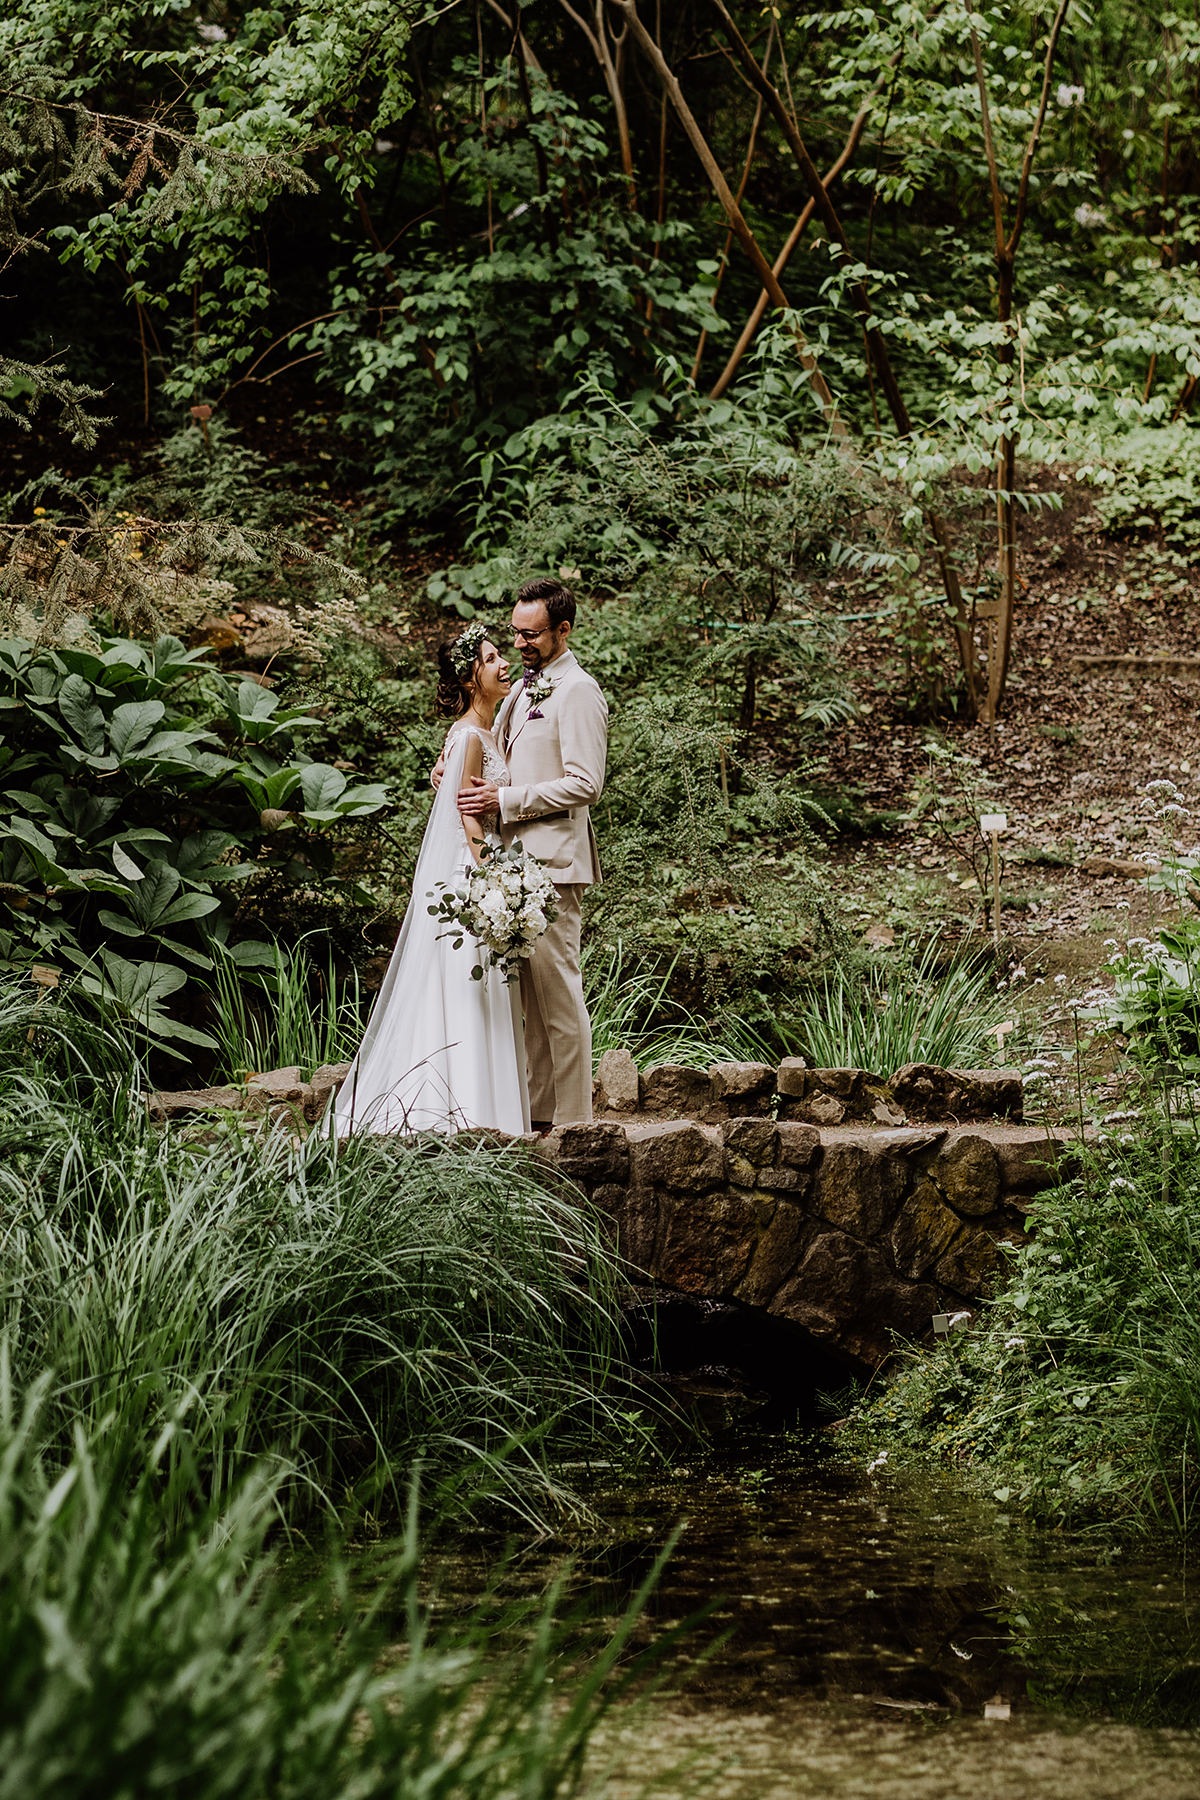 Standesamt Hochzeitsfotografin Berlin im Botanischen Garten zeigt Hochzeits-Fotoshooting mit Paar im Wald bzw. Park